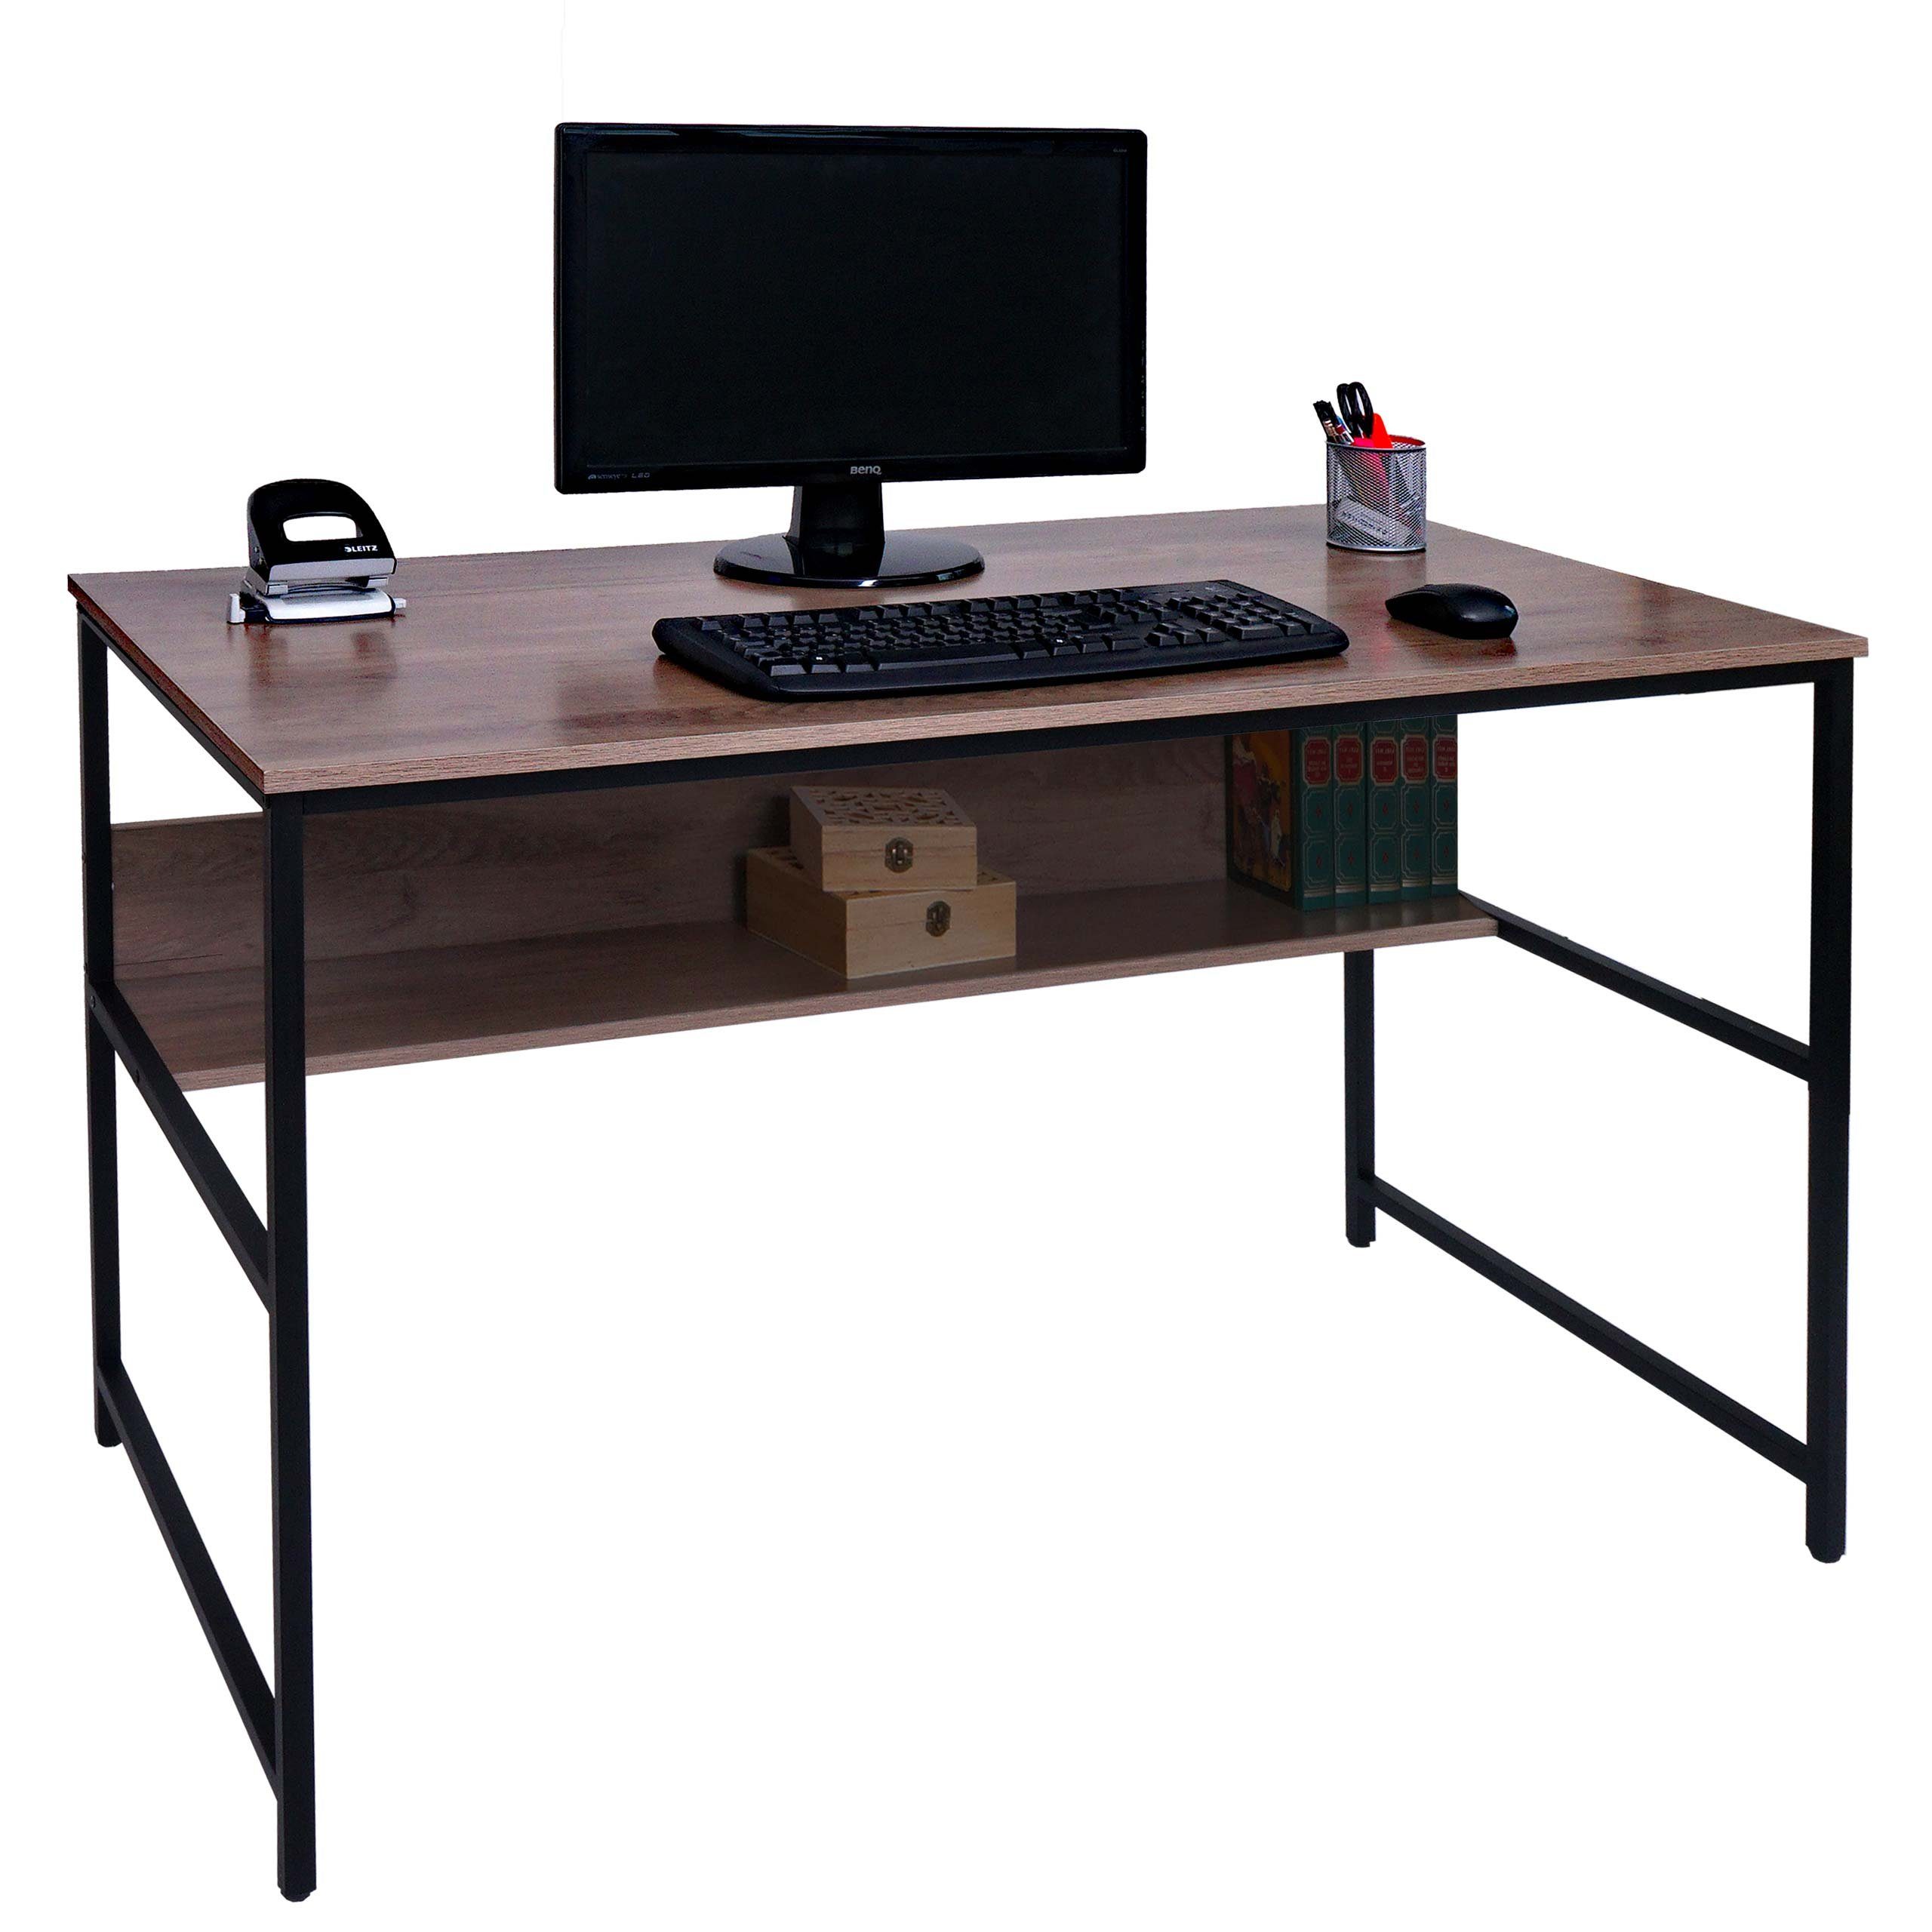 MCW Schreibtisch MCW-K80, Melaminbeschichtet grau-braun Holzoptik | grau-braun mit